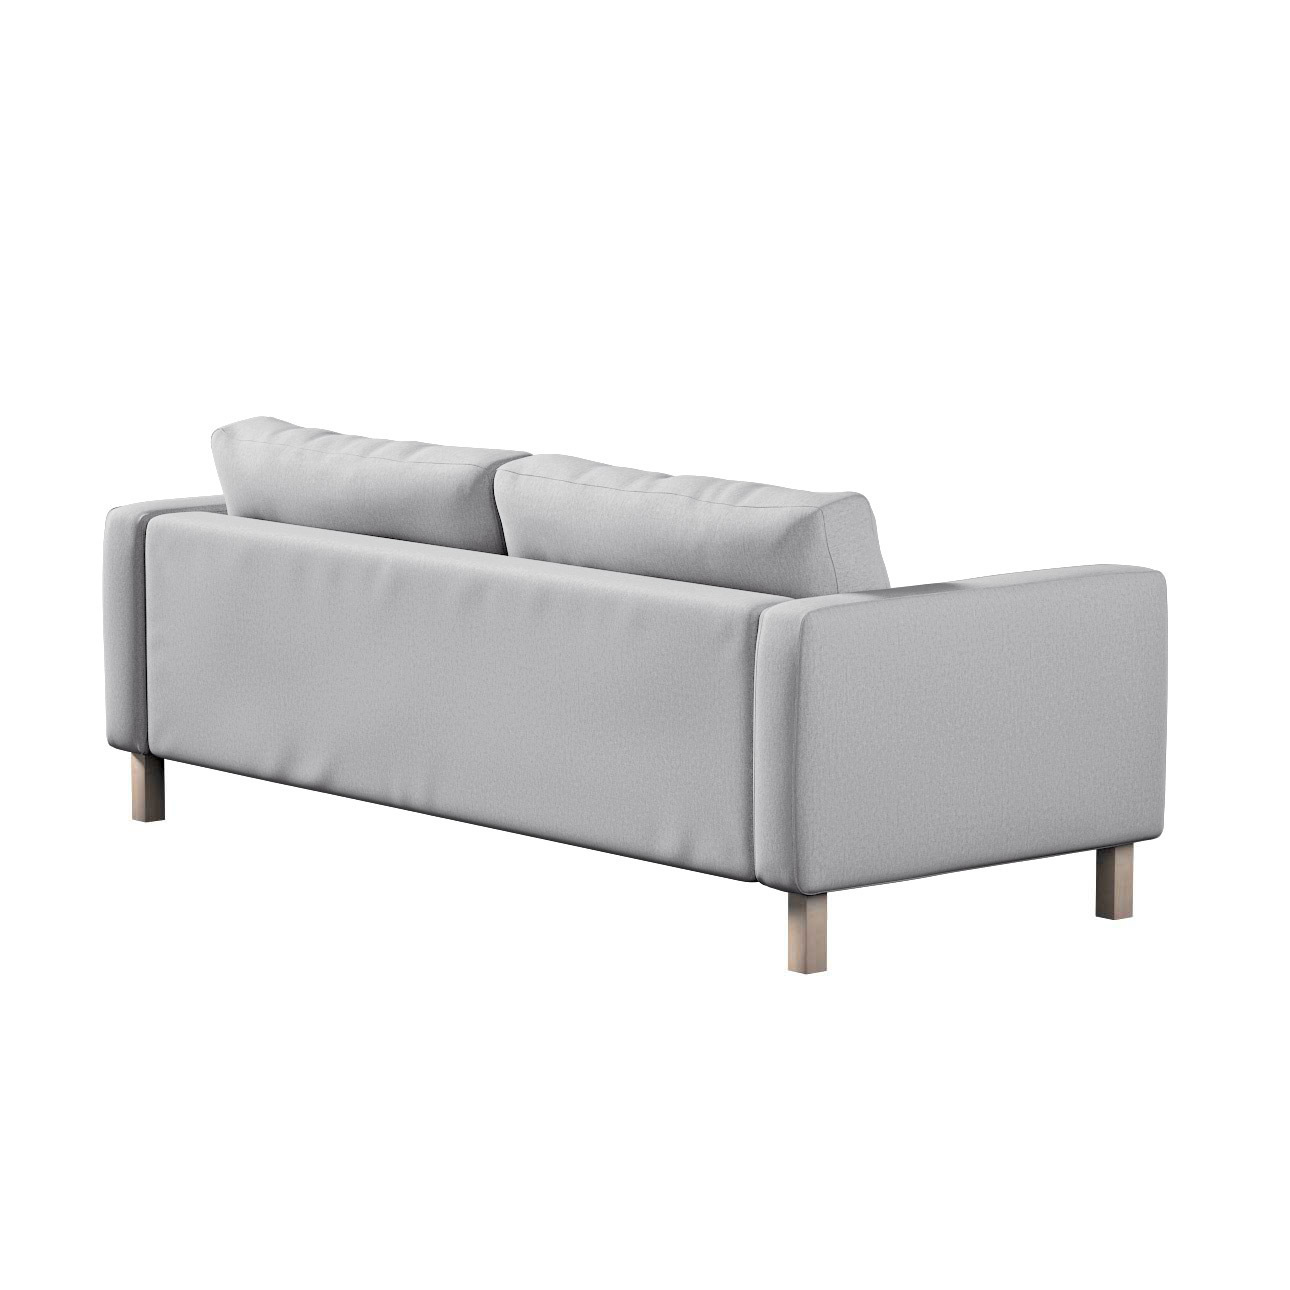 Bezug für Karlstad 3-Sitzer Sofa nicht ausklappbar, kurz, szary, Bezug für günstig online kaufen